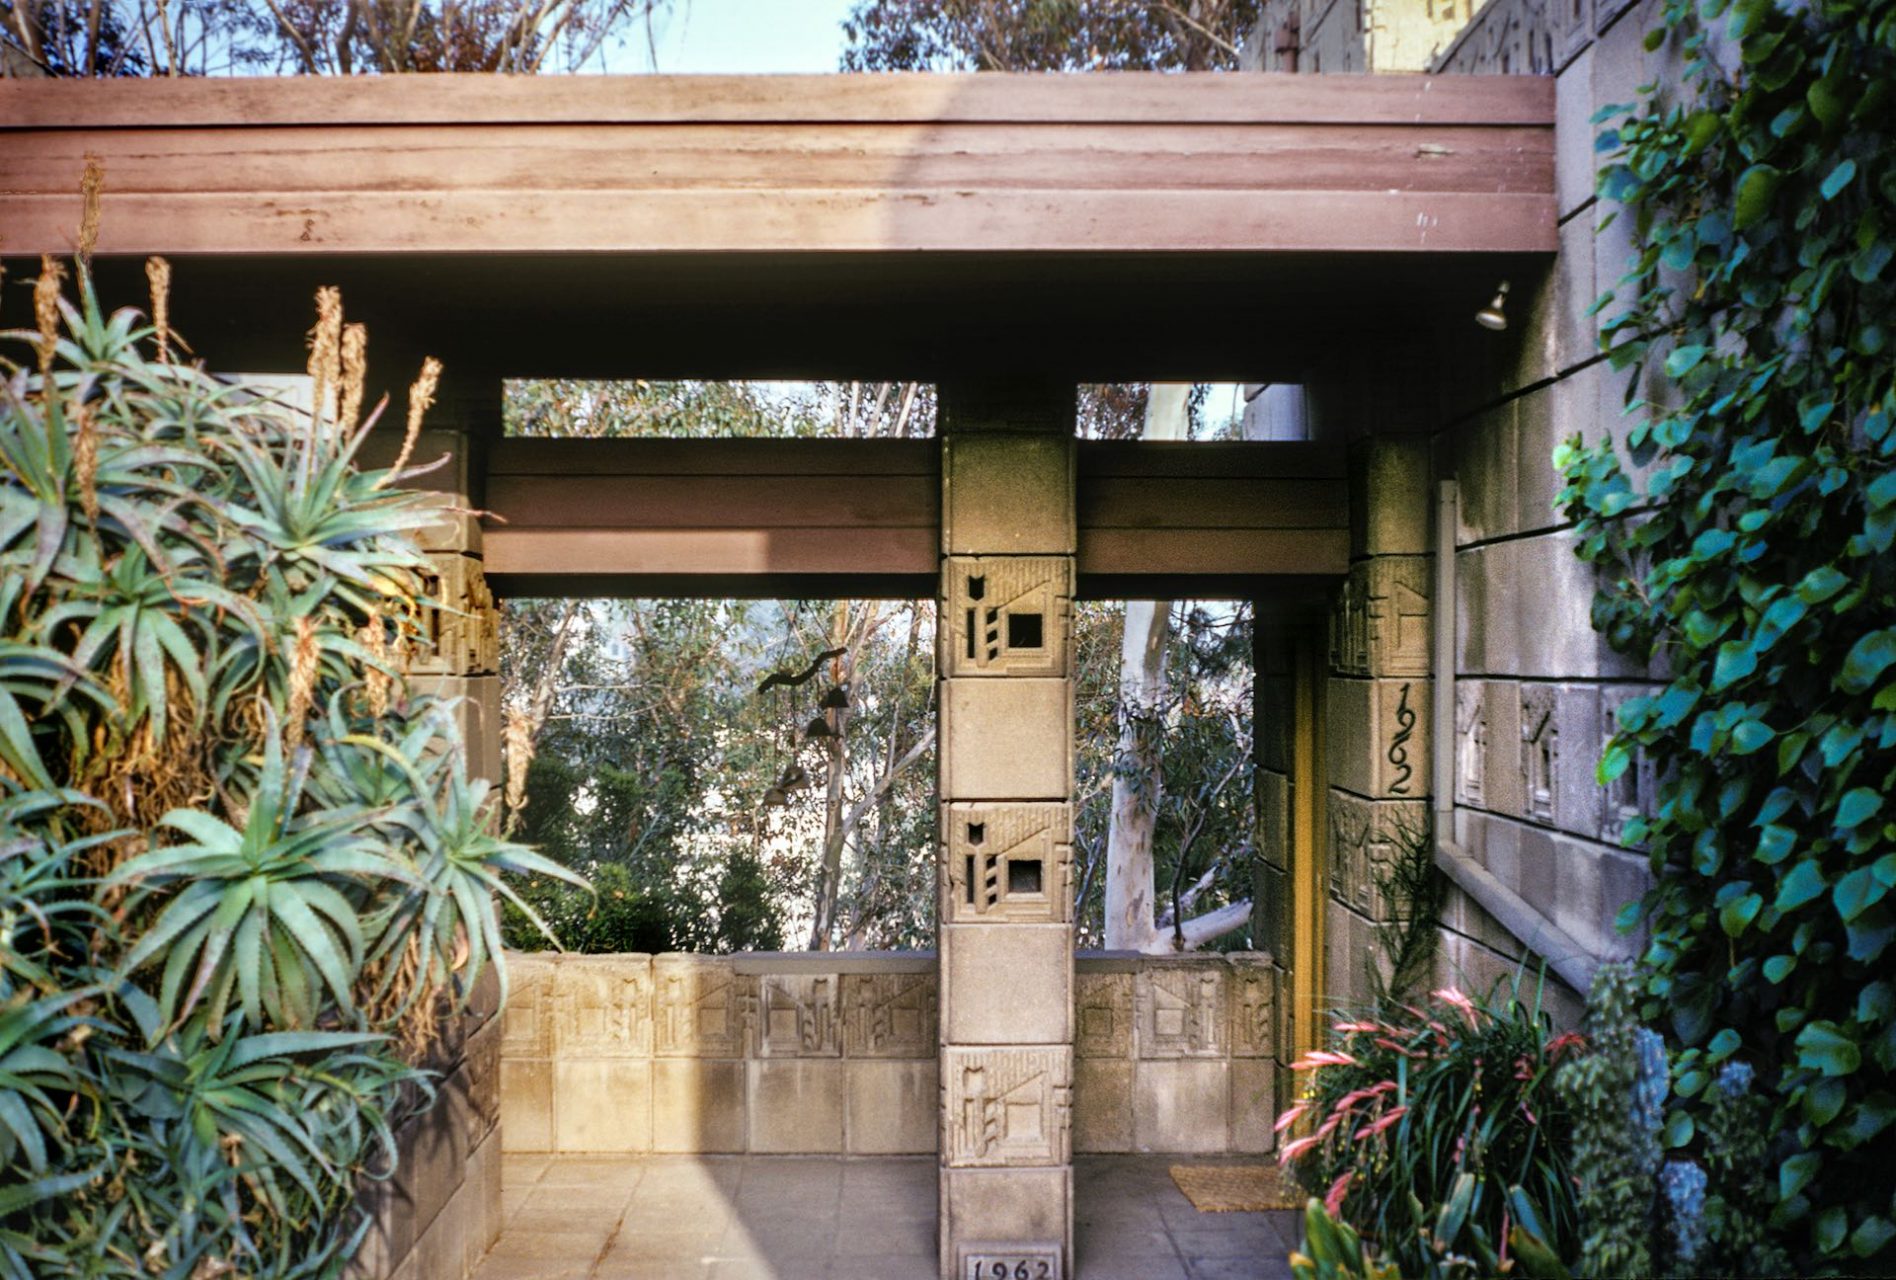 imagen 2 de Se vende la casa de los Freeman, obra y arte de Frank Lloyd Wright.